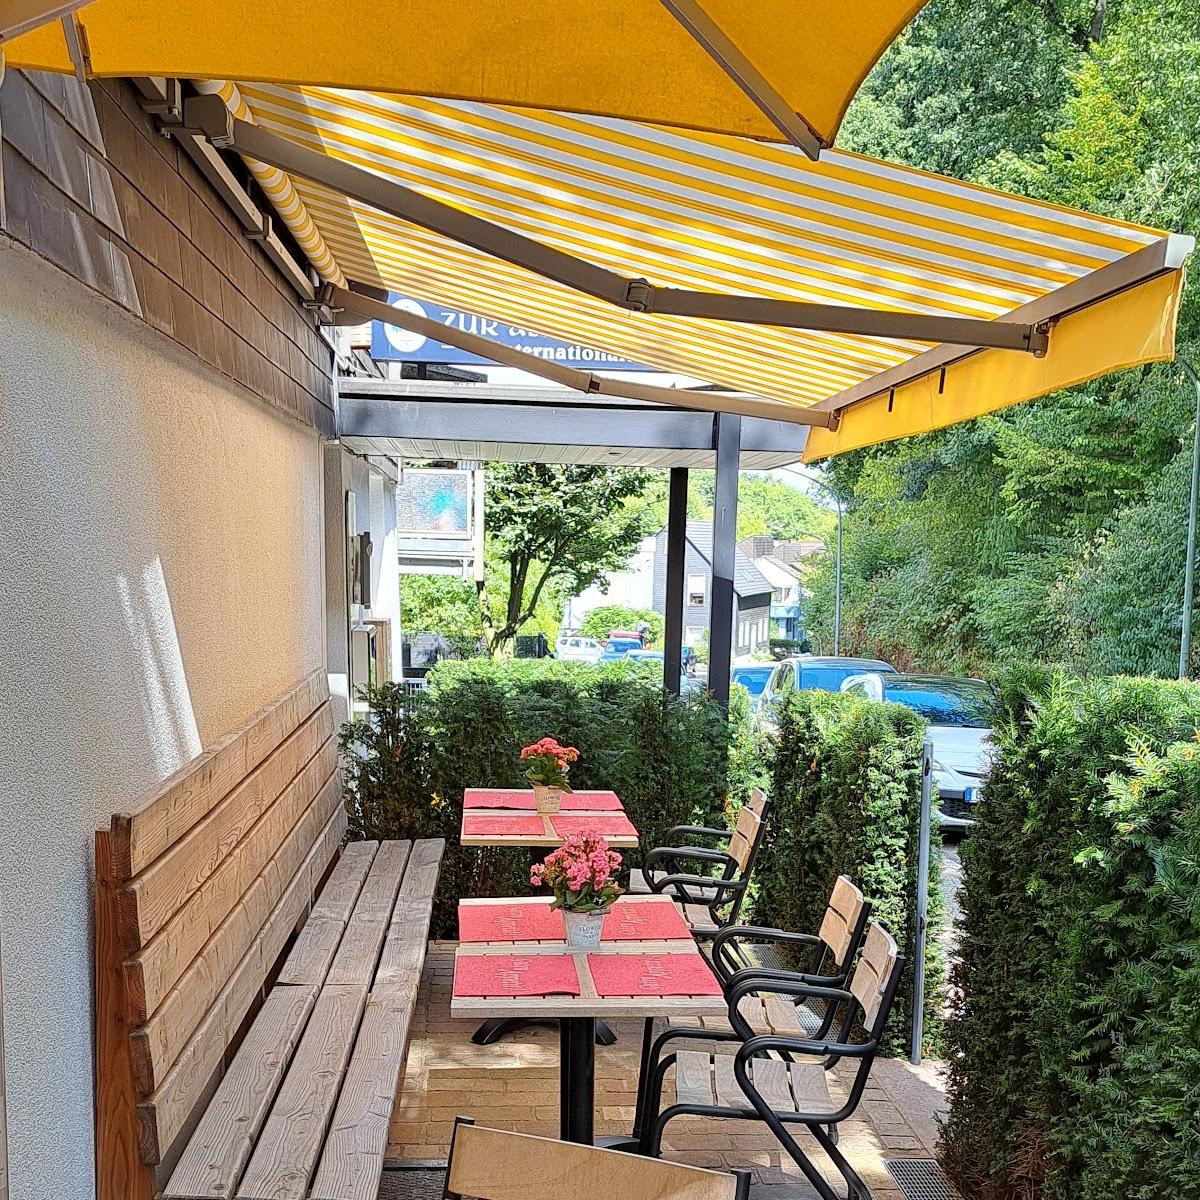 Restaurant "Zur Alten Schmette" in Essen